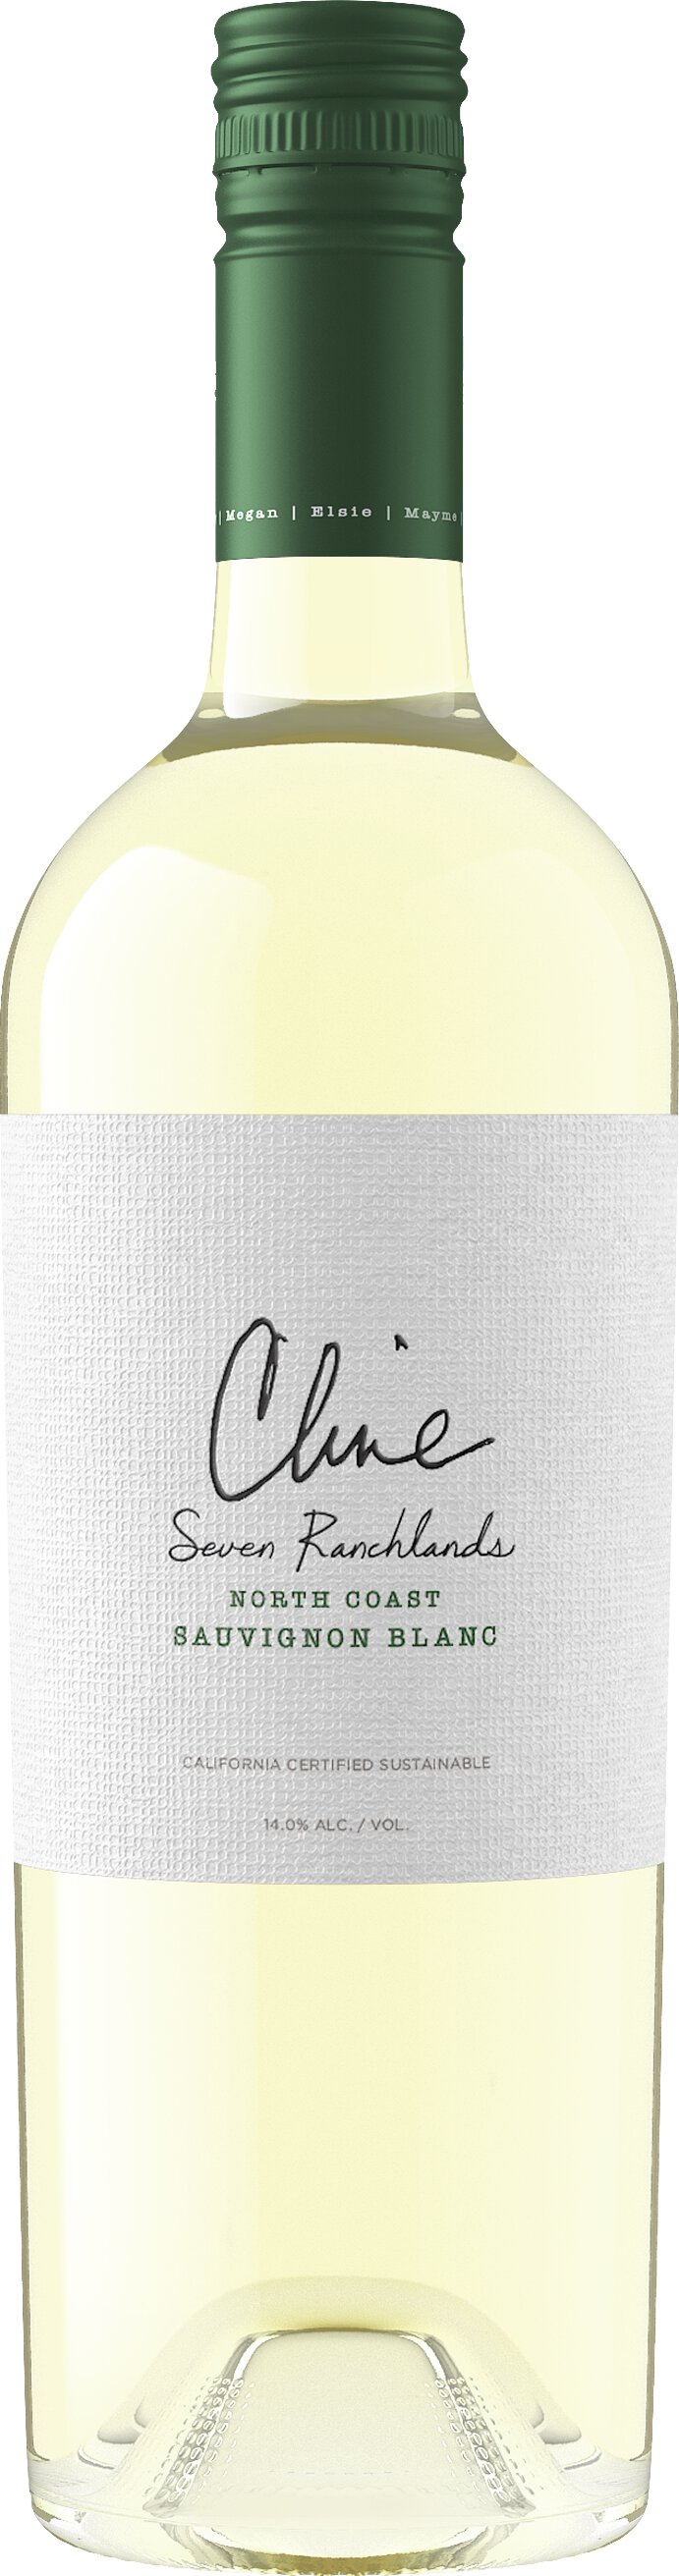 Cline Seven Ranchlands North Coast Sauvignon Blanc